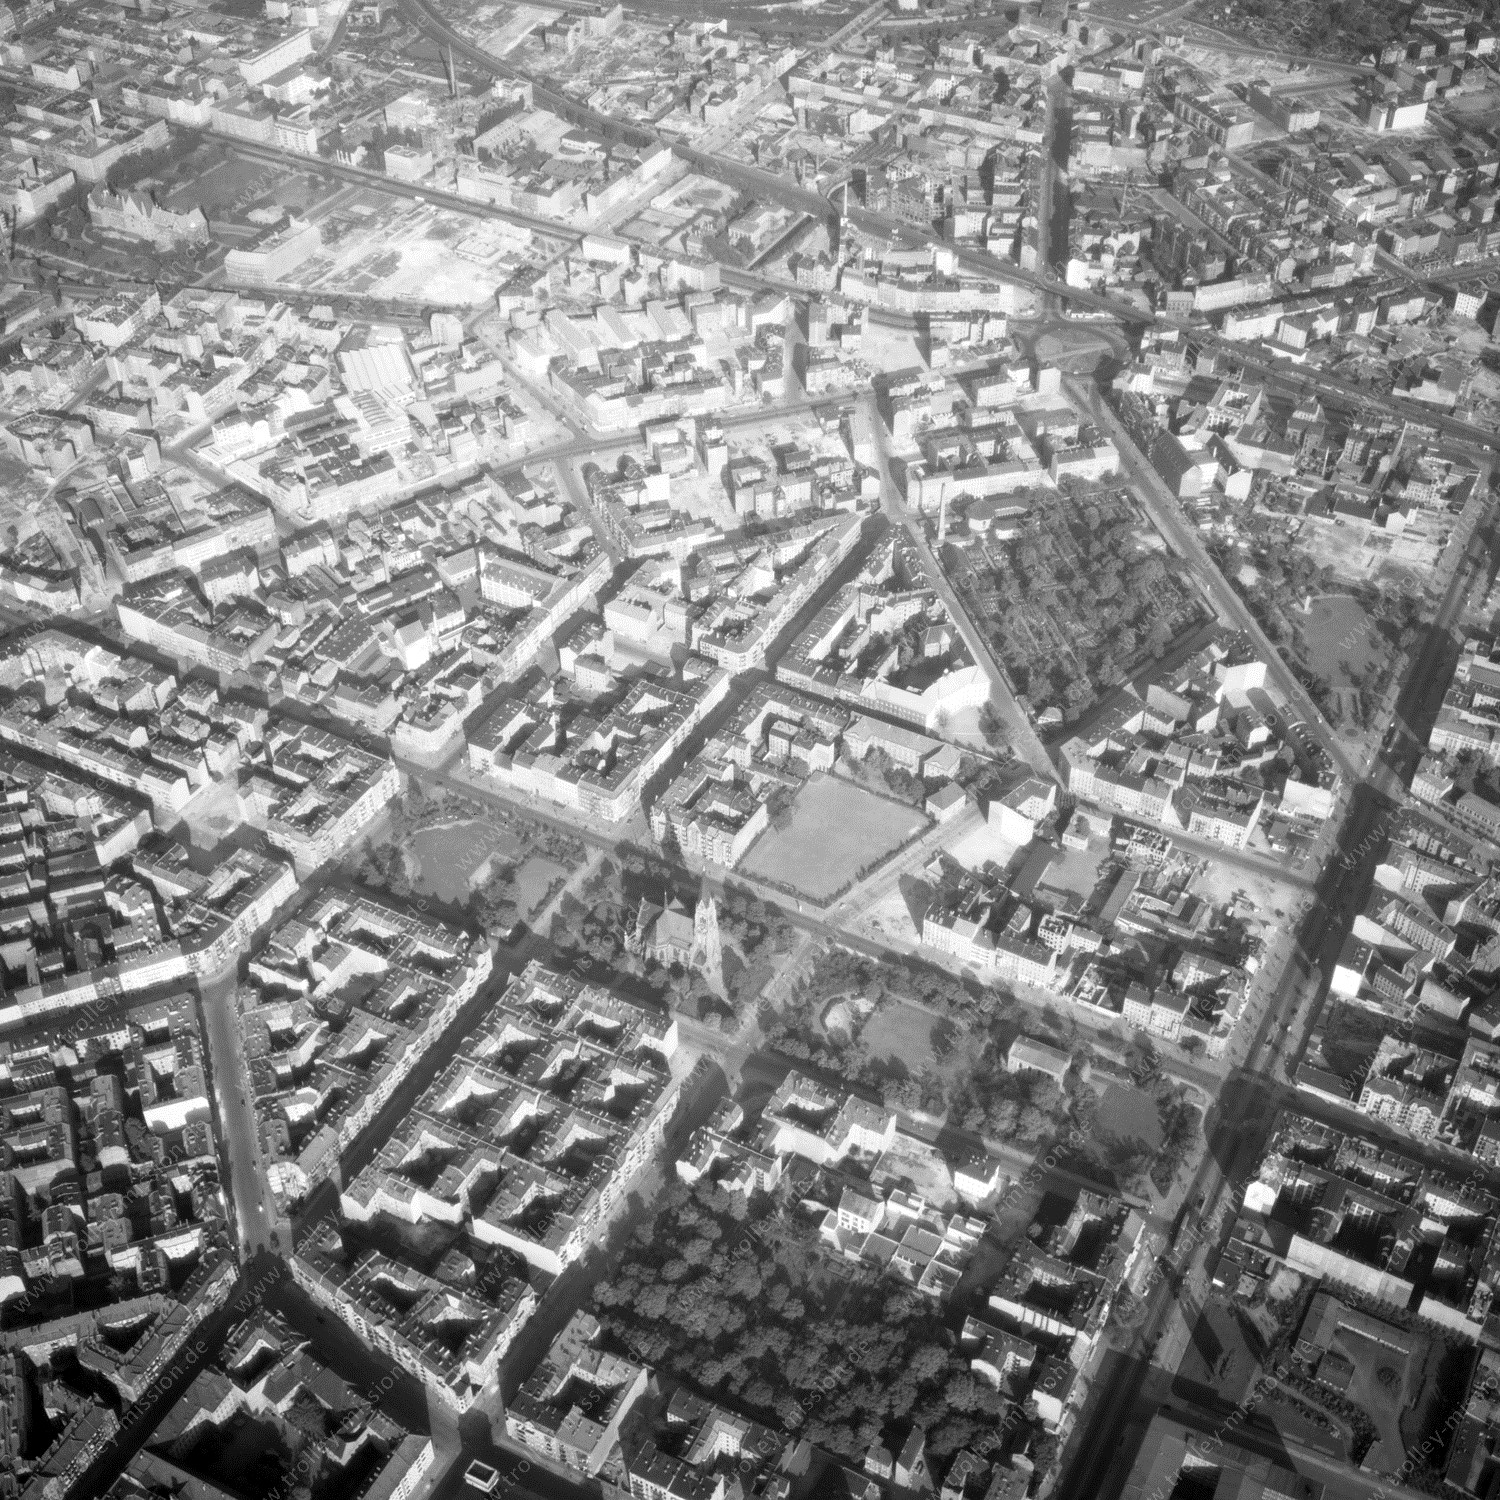 Alte Fotos und Luftbilder von Berlin - Luftbildaufnahme Nr. 10 - Historische Luftaufnahmen von West-Berlin aus dem Jahr 1954 - Flugstrecke Papa